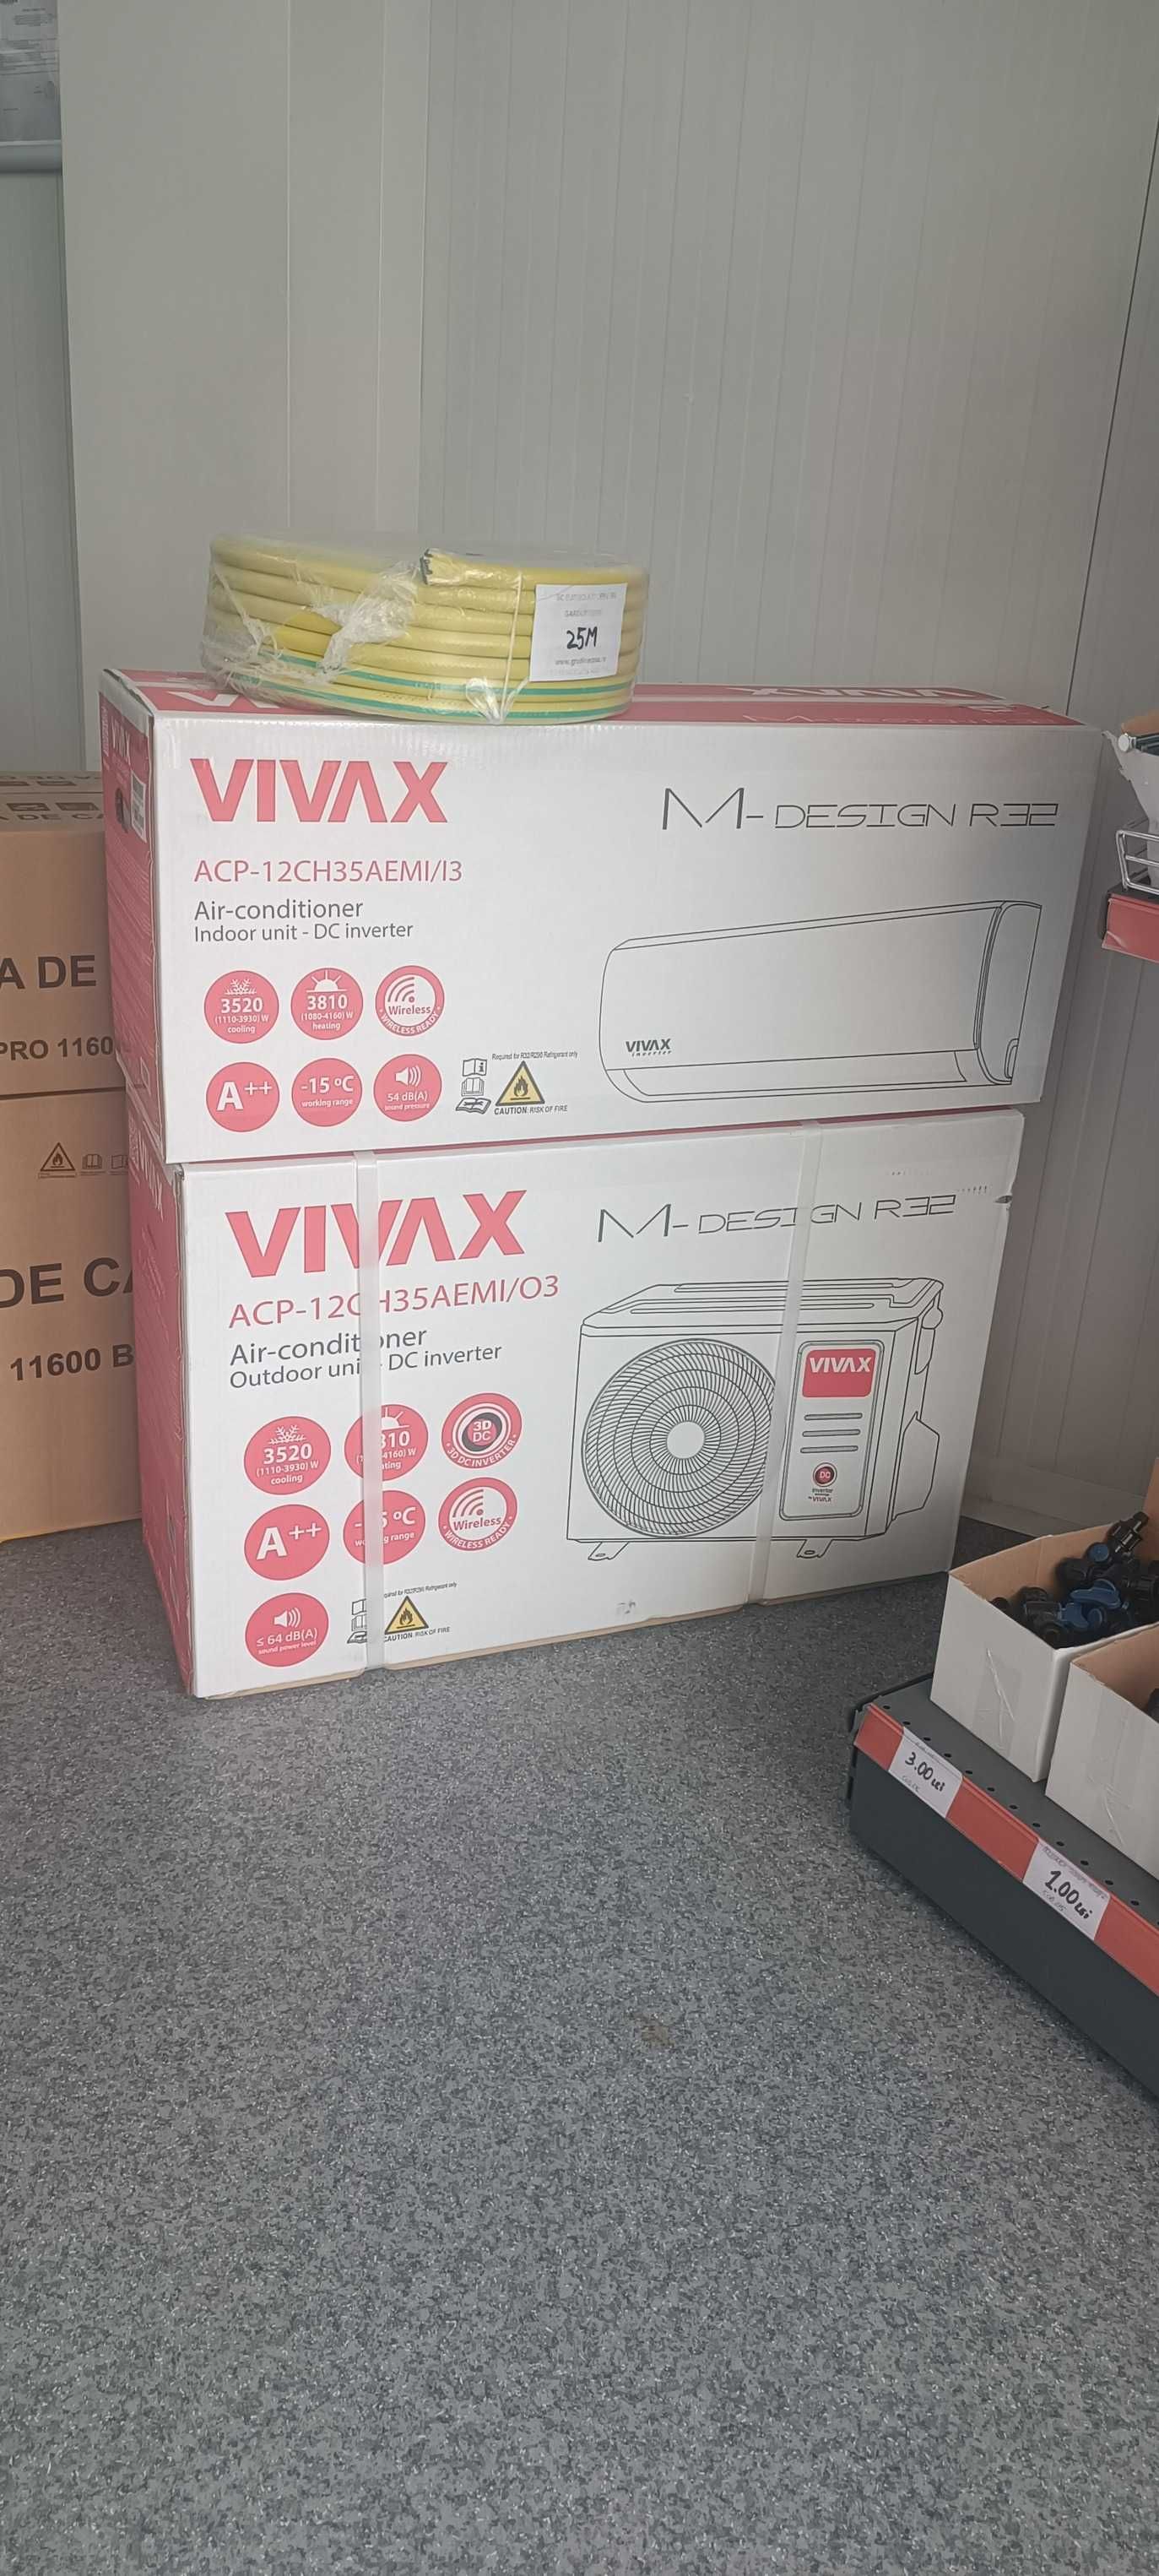 Aer Conditionat VIVAX M-Design,12000 BTU- 1500 lei